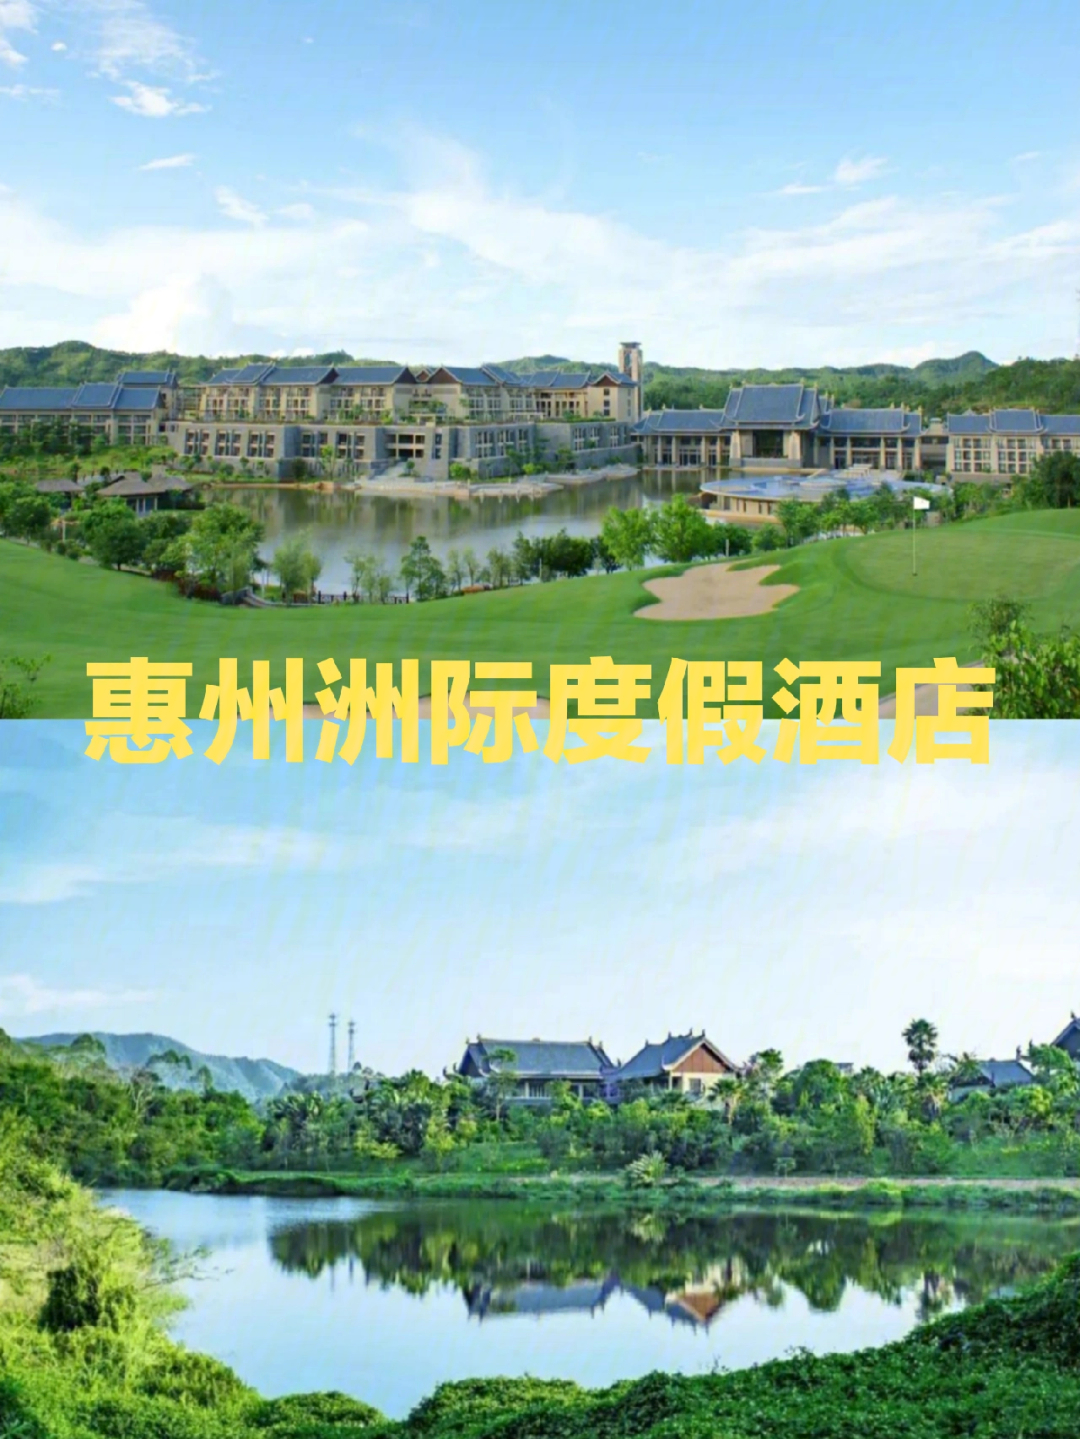 惠州横沥洲际酒店房价图片